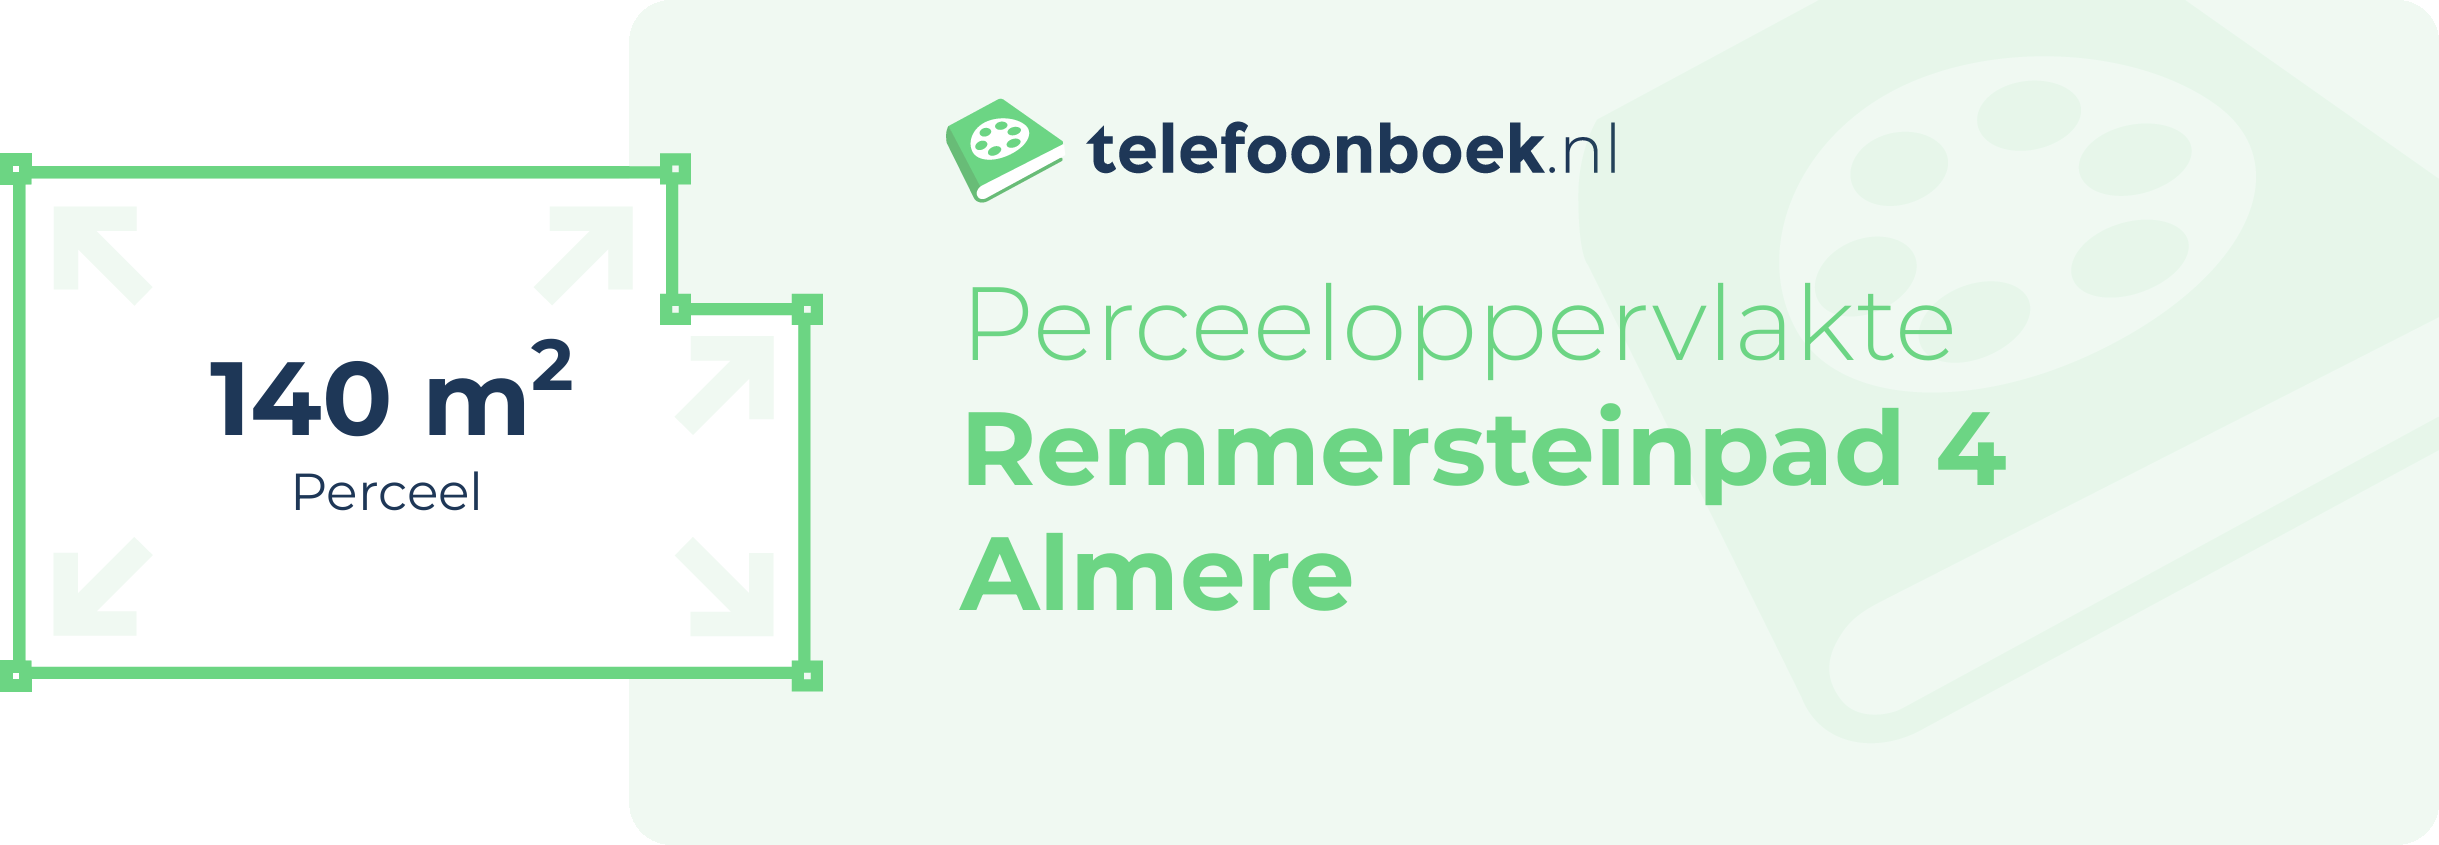 Perceeloppervlakte Remmersteinpad 4 Almere